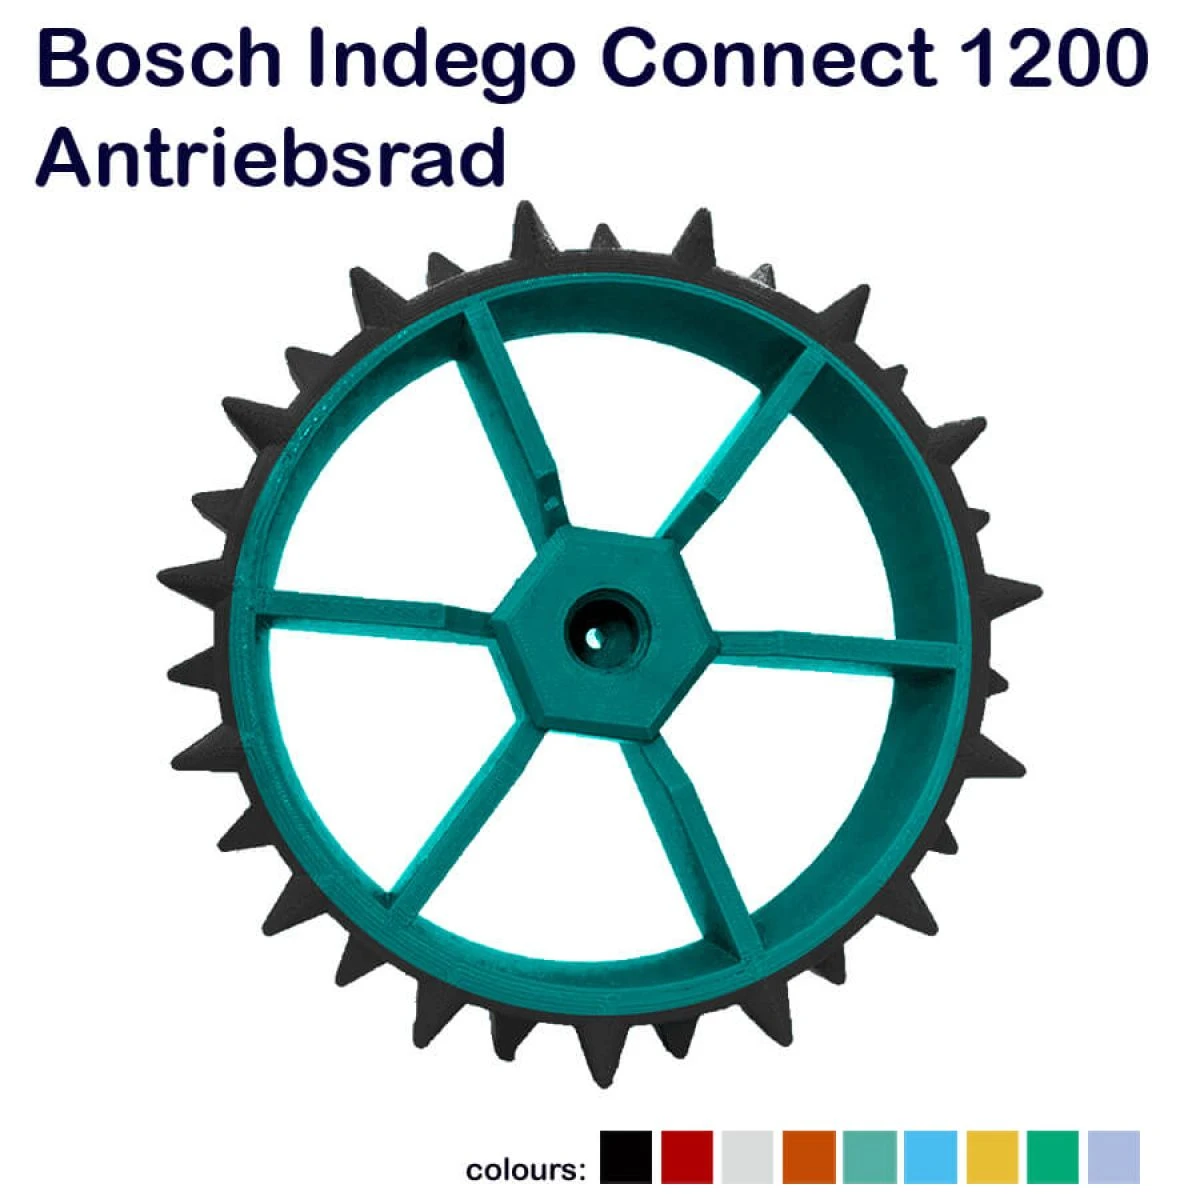 Antriebsrad Bosch Indego Connect 1200